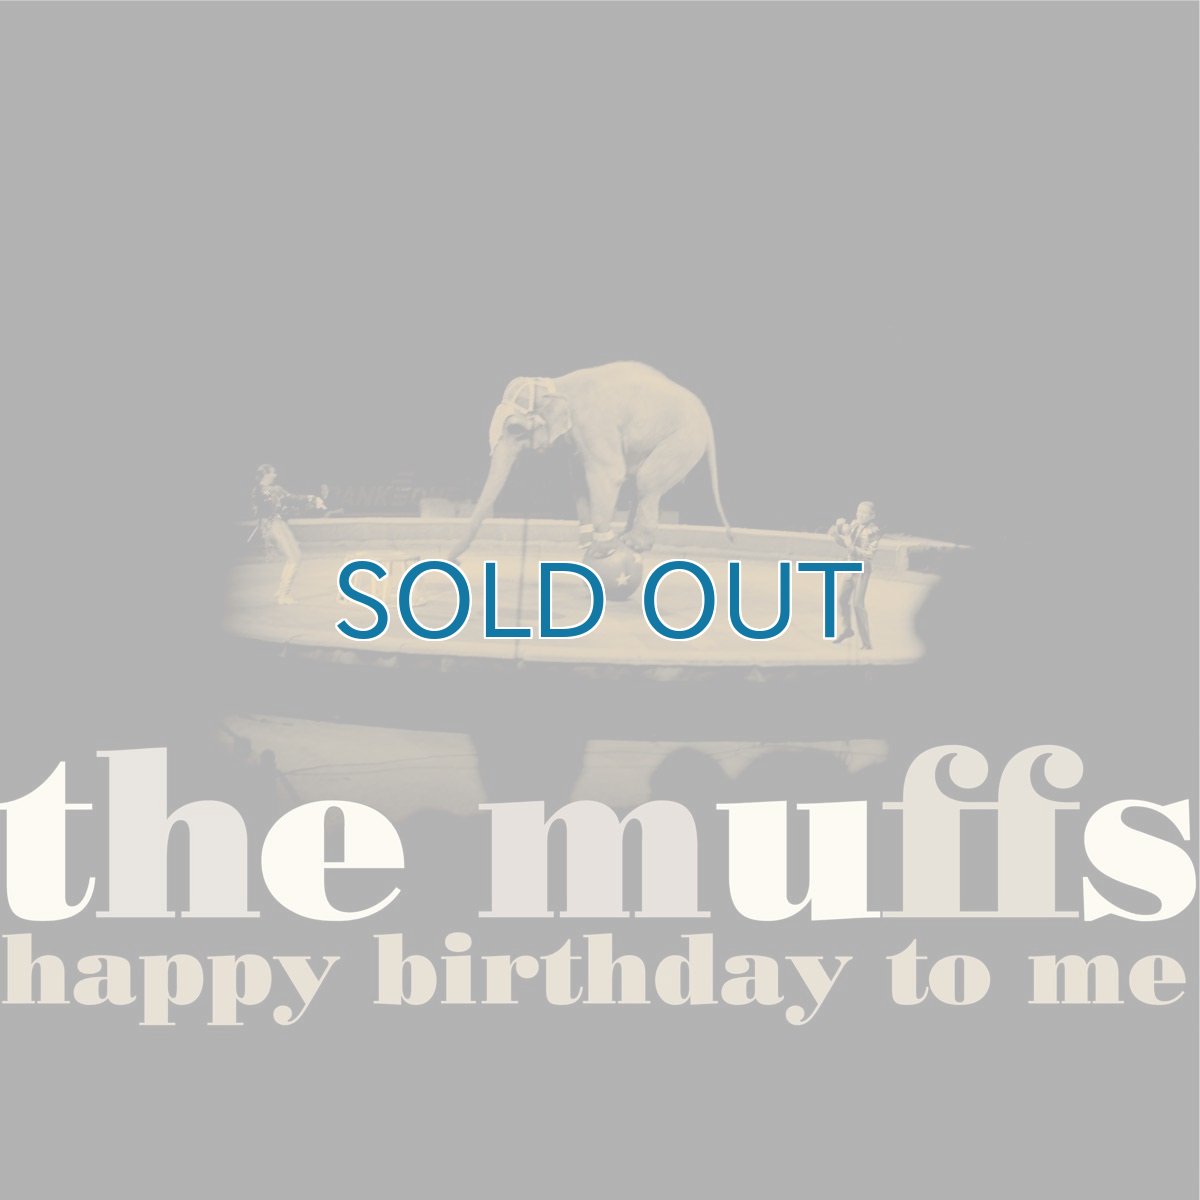 画像1: The Muffs / Happy Birthday To Me [12inch アナログ・オリジナル盤]【新品】 (1)